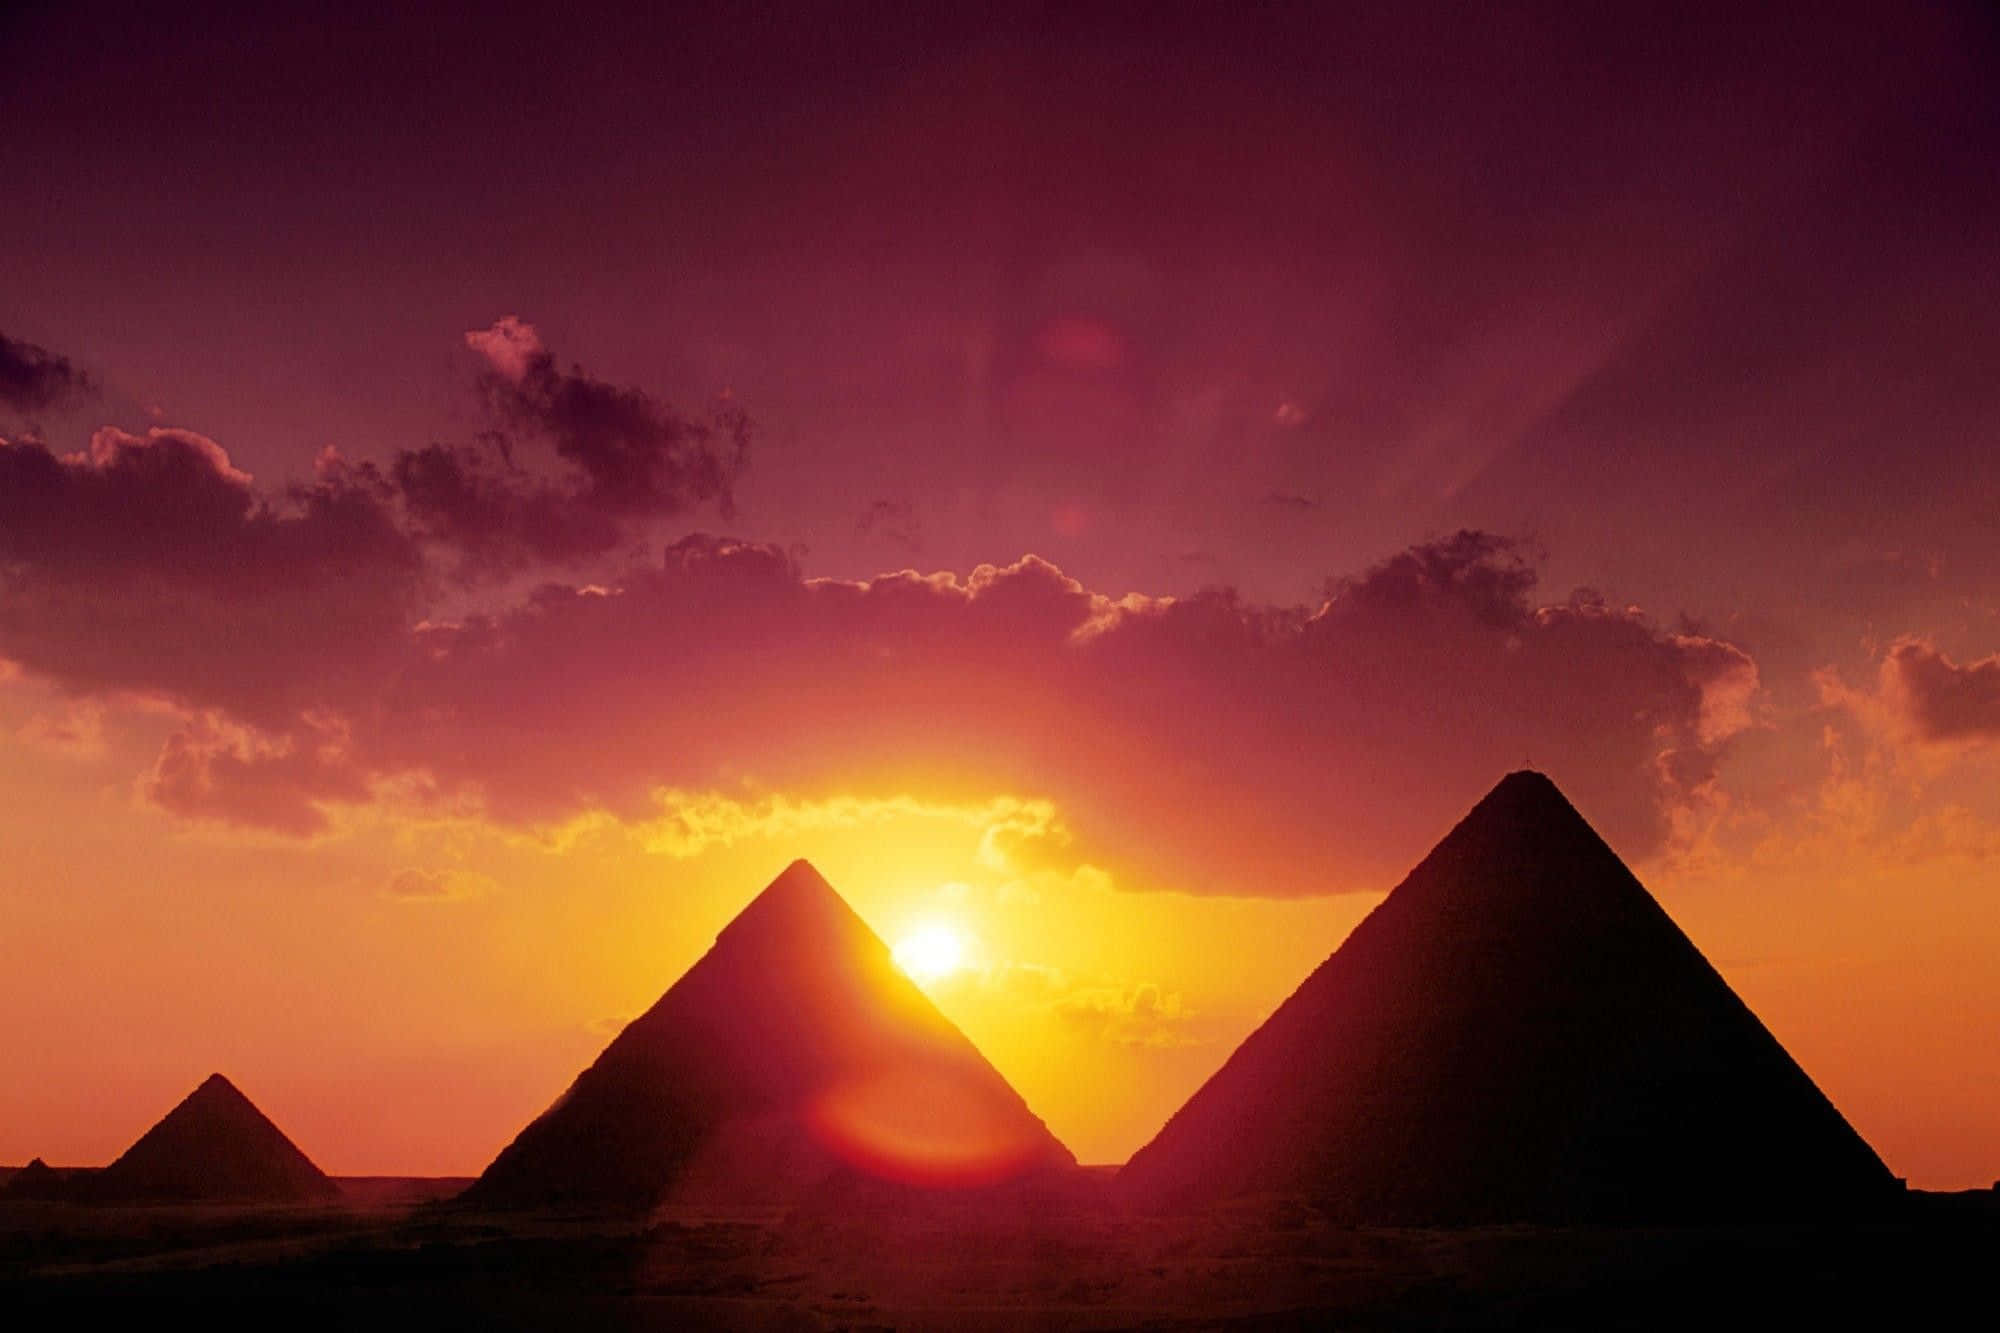 Unavista Impresionante De Las Pirámides De Giza Al Atardecer.